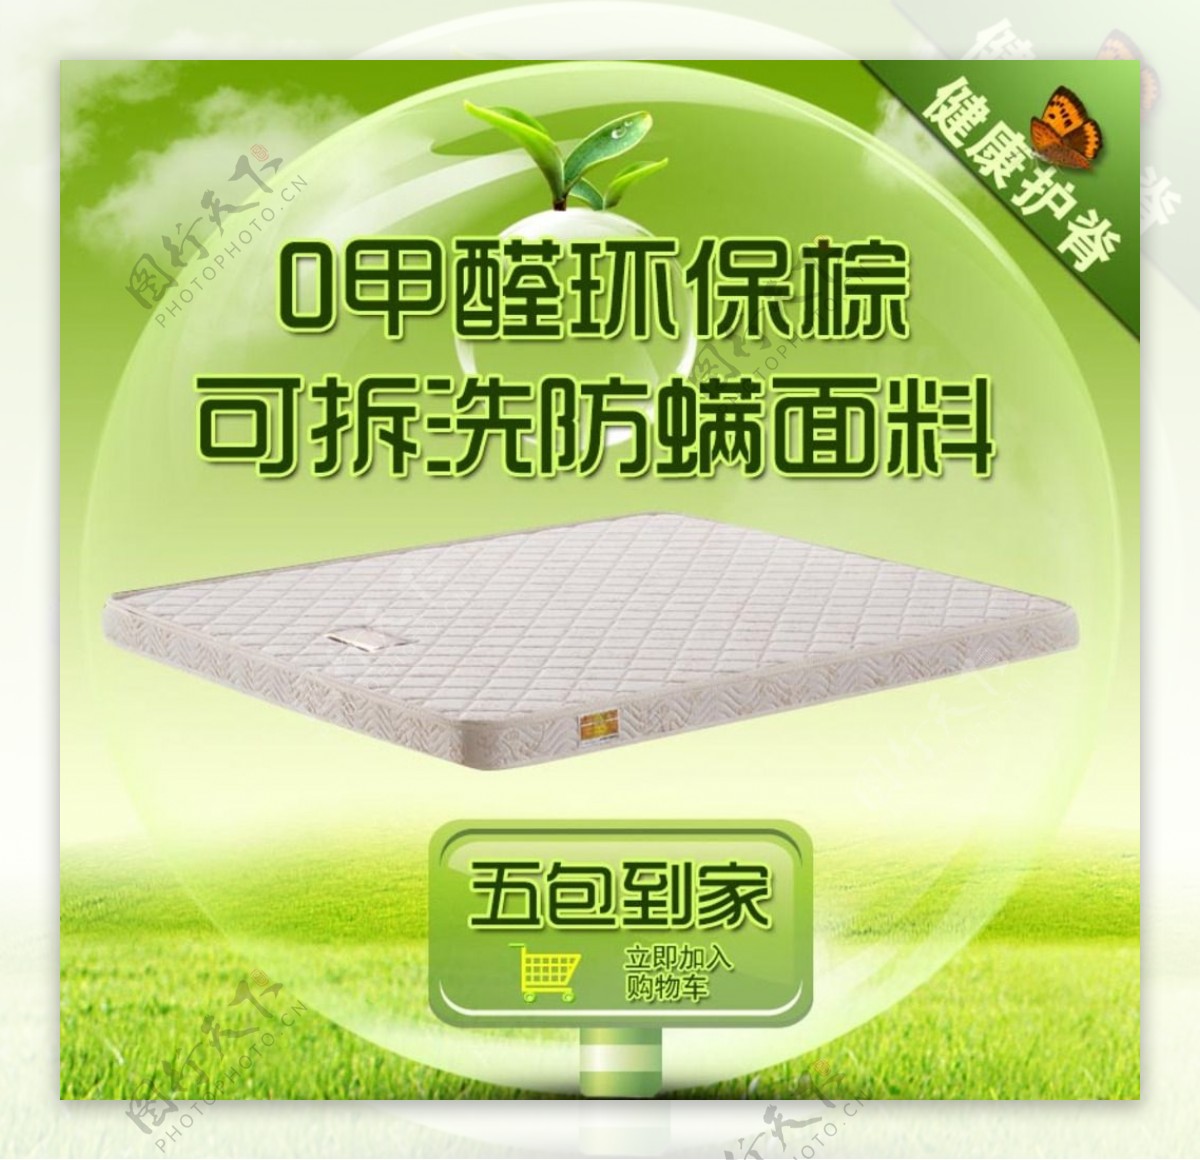 绿色环保养生床垫海报图片